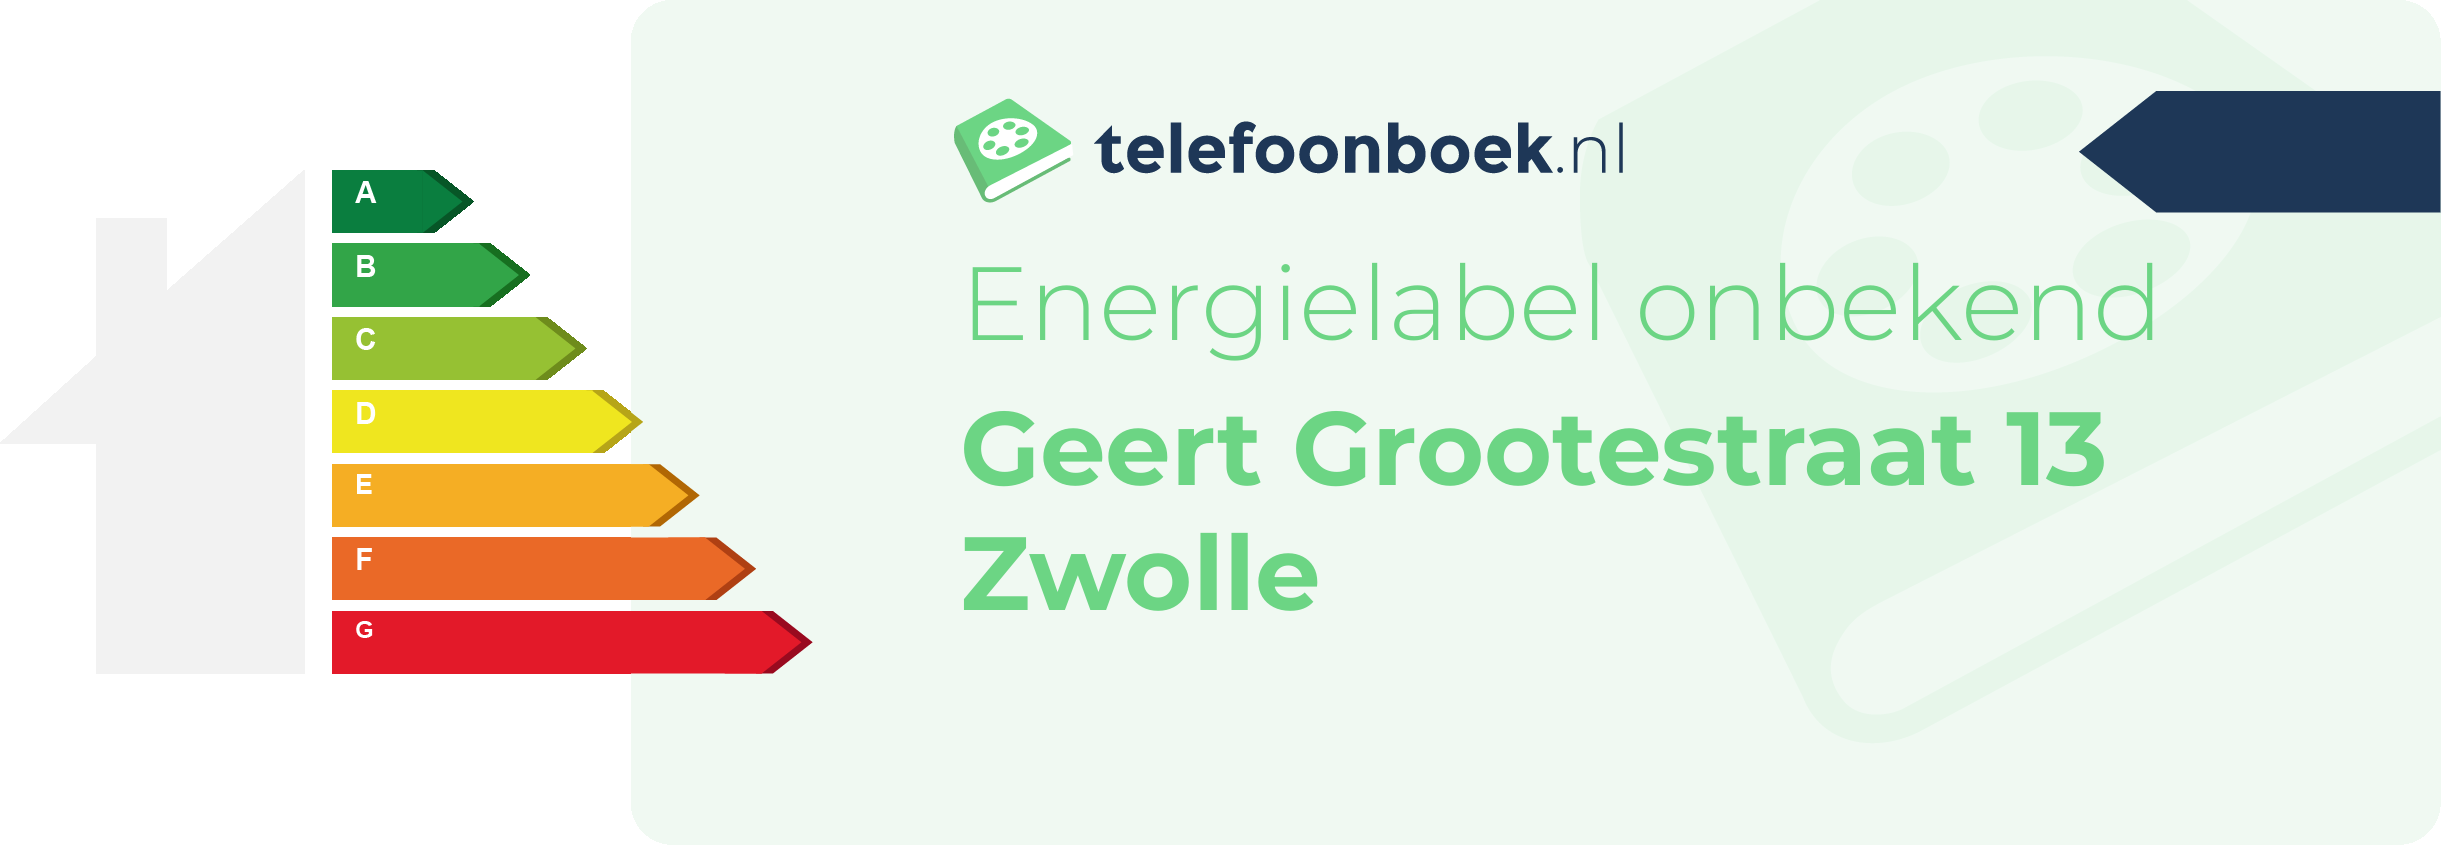 Energielabel Geert Grootestraat 13 Zwolle